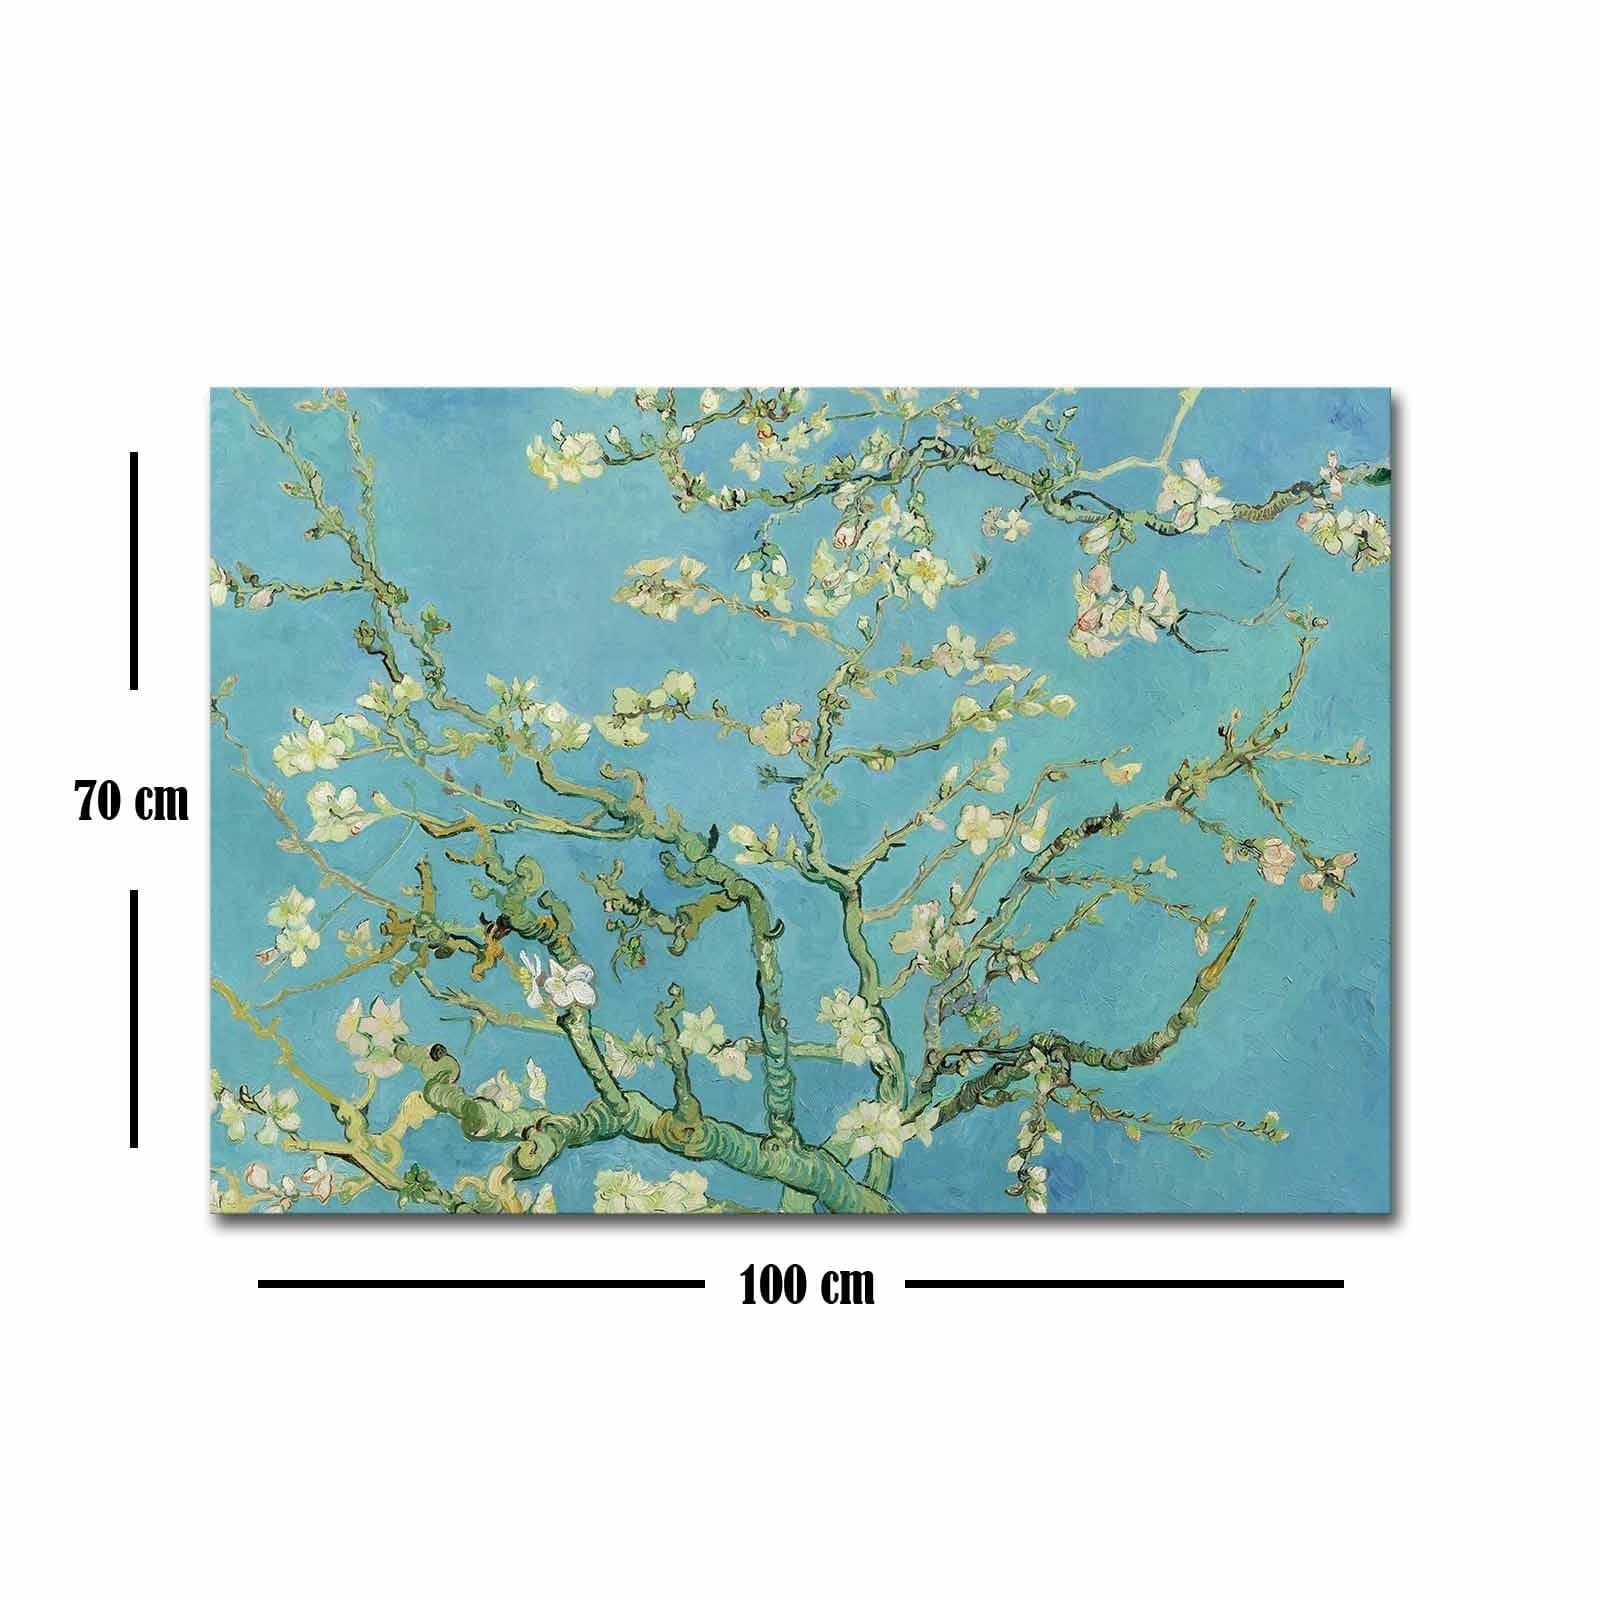 Asir Tablou Canvas Cherry Blossoms 70100FAMOUSART-053 Multicolor, 100 x 70 cm